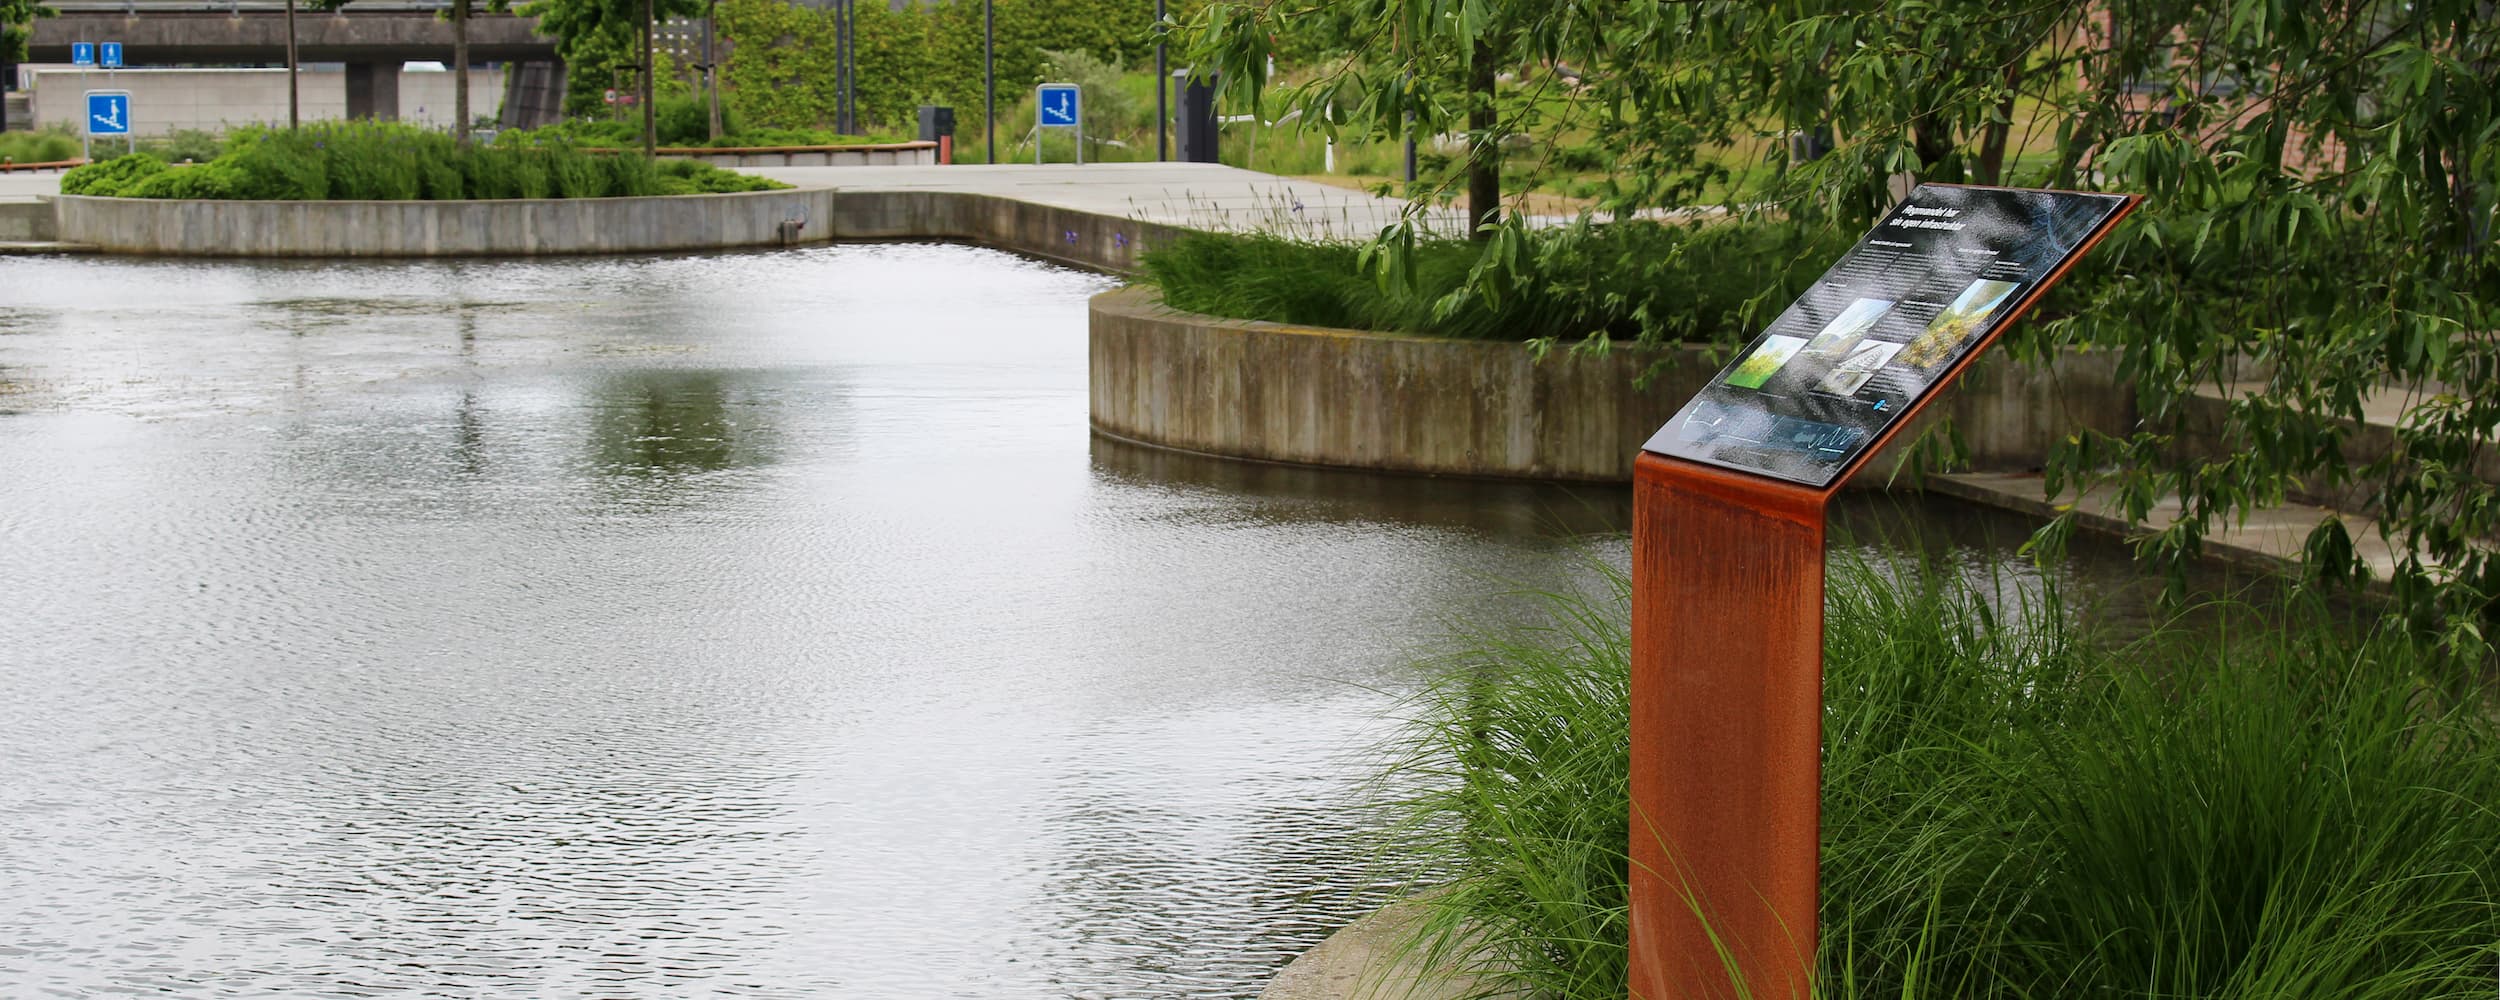 Ørestad Vandlaug har i samarbejde med grundejerforeningerne opsat nye skilte i byrummet, som formidler viden og fakta om bydelens kanaler og søer. På billedet ses et af de blå skilte på "Kanalpladsen" i Arenakvarteret.